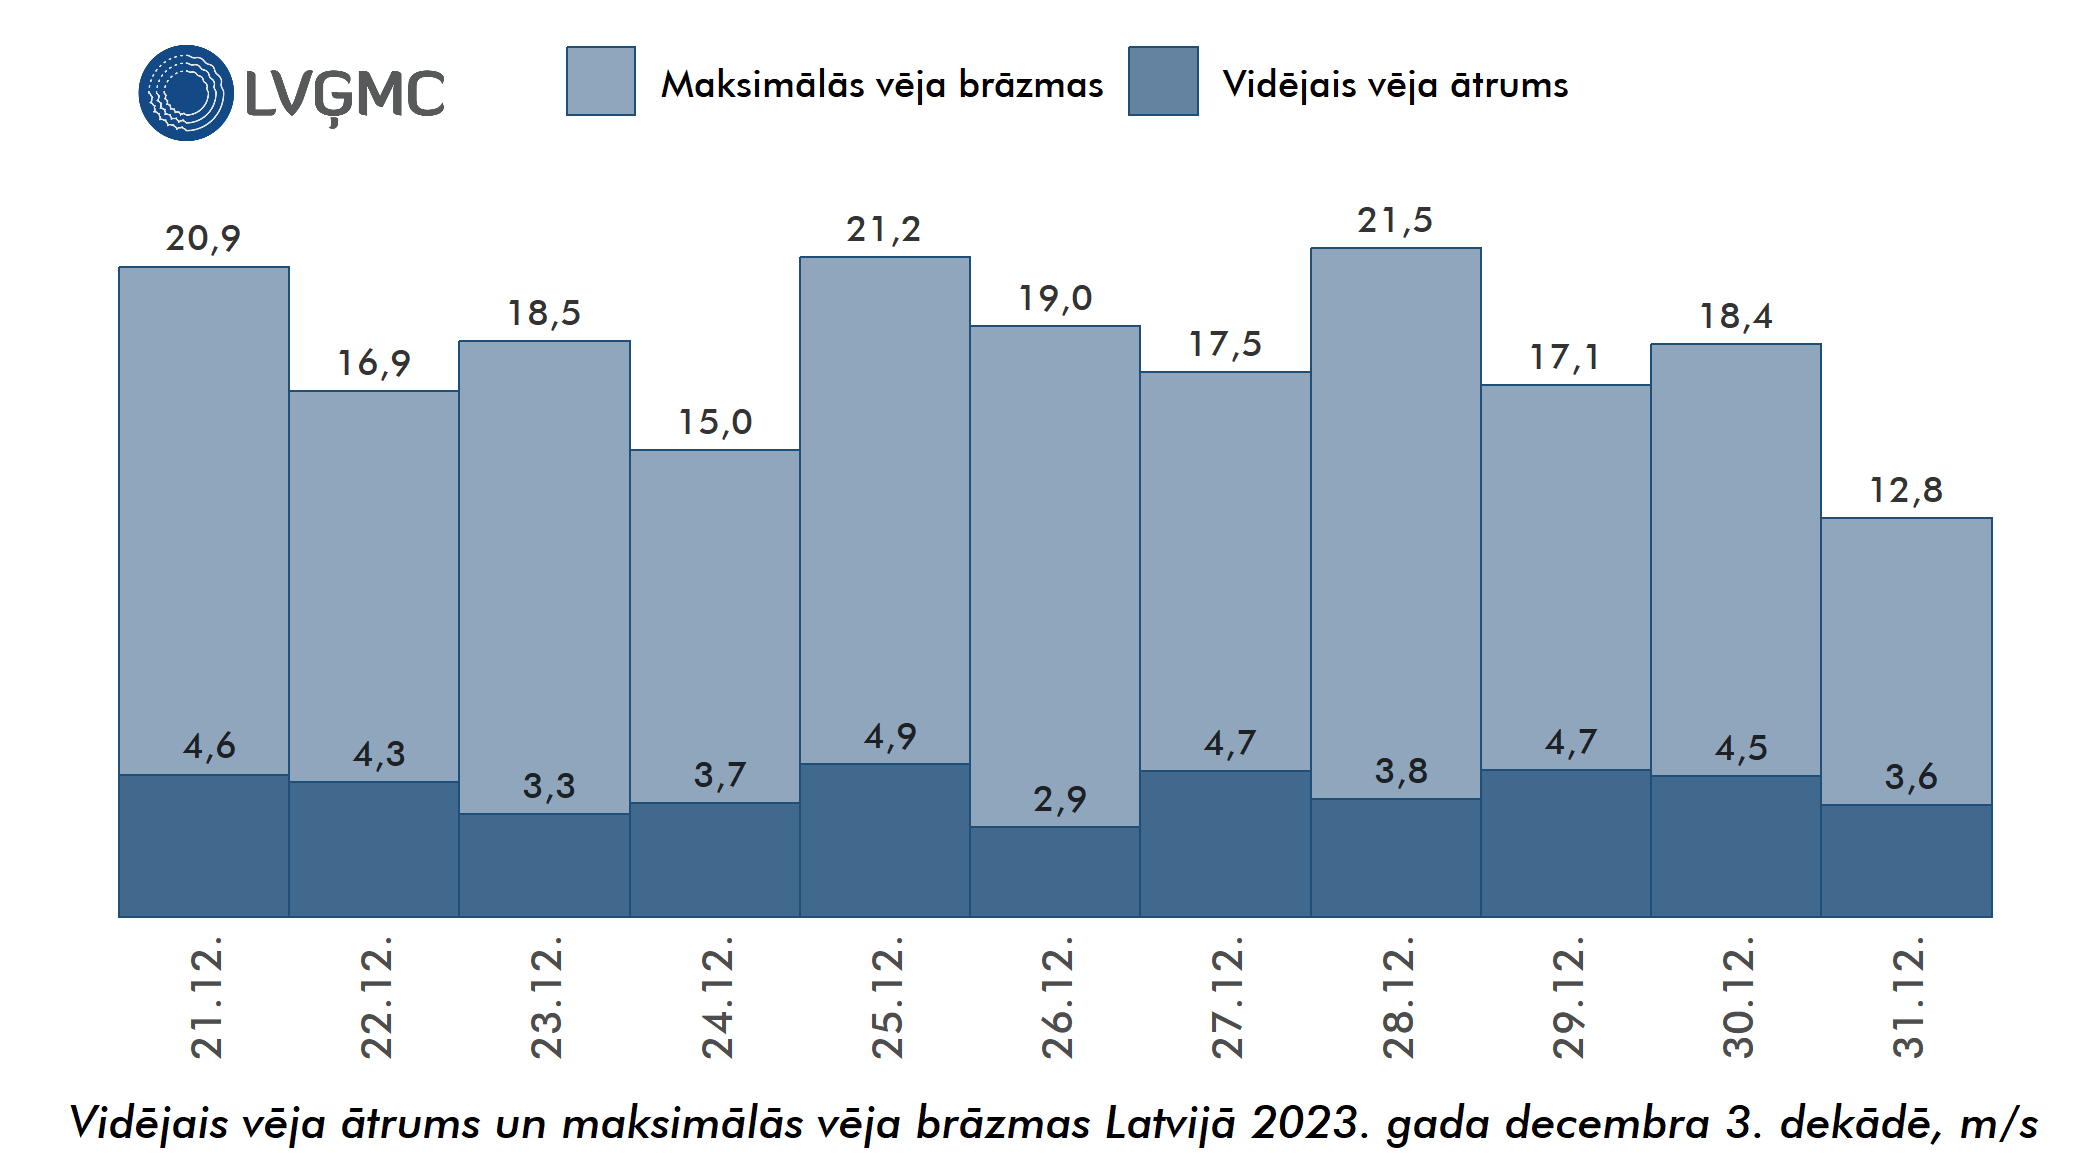 Vidējais un maksimālais vēja ātrums Lavijā 2023. gada decembra 3. dekādē, m/s